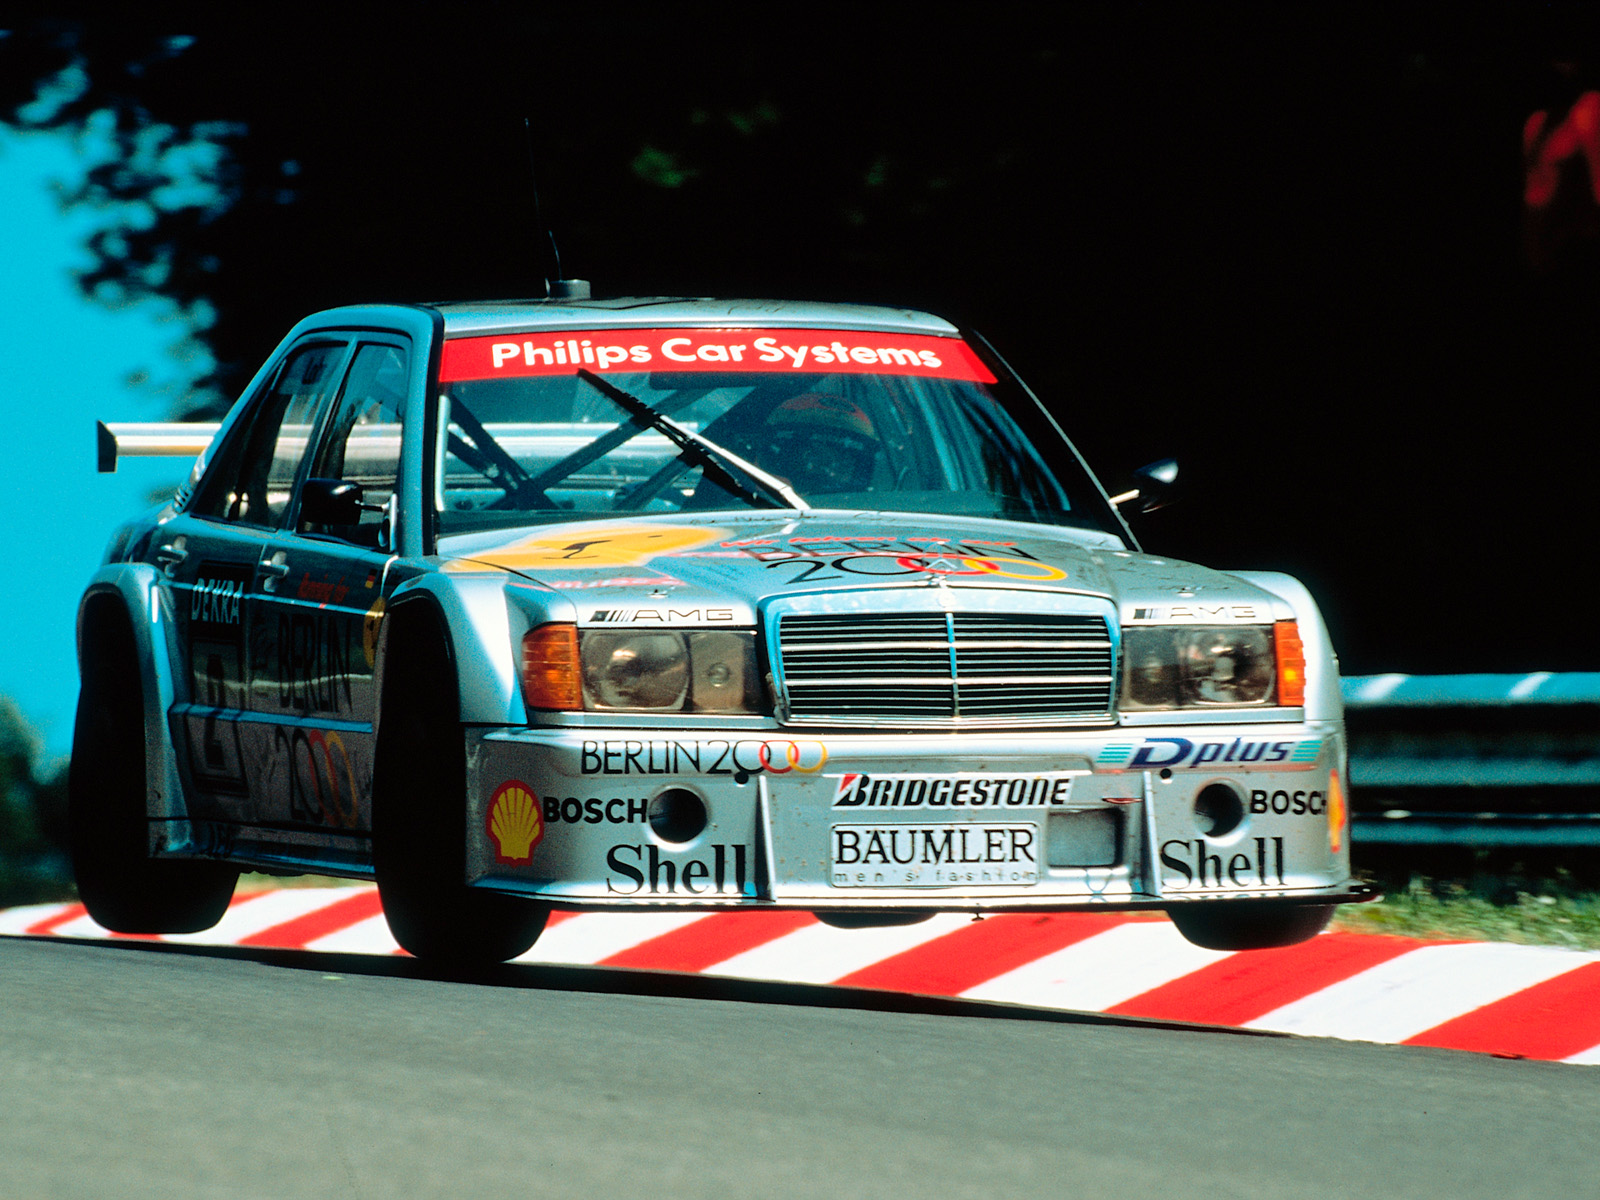 1993, Mercedes, Benz, Amg, 190, Evolution, I i, Dtm, W201, Race, Racing, Gs Wallpaper